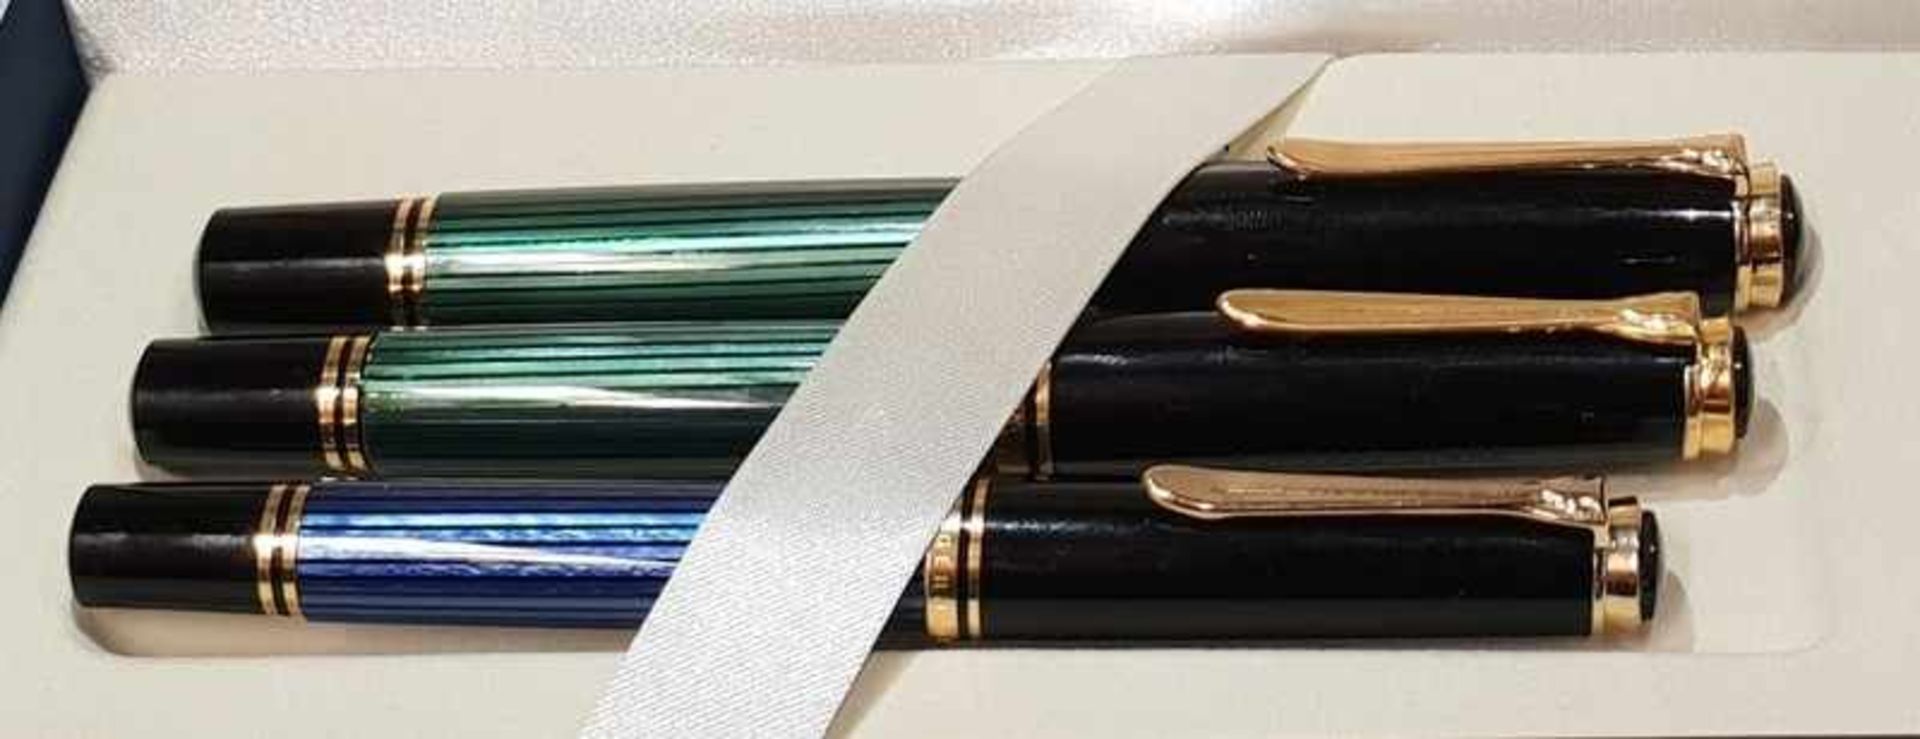 Großes Pelikan Schreibsetbestehend aus 3 Füllfedern, Modellnr.: M1000, Feder Gold 750 tlw. - Bild 2 aus 3